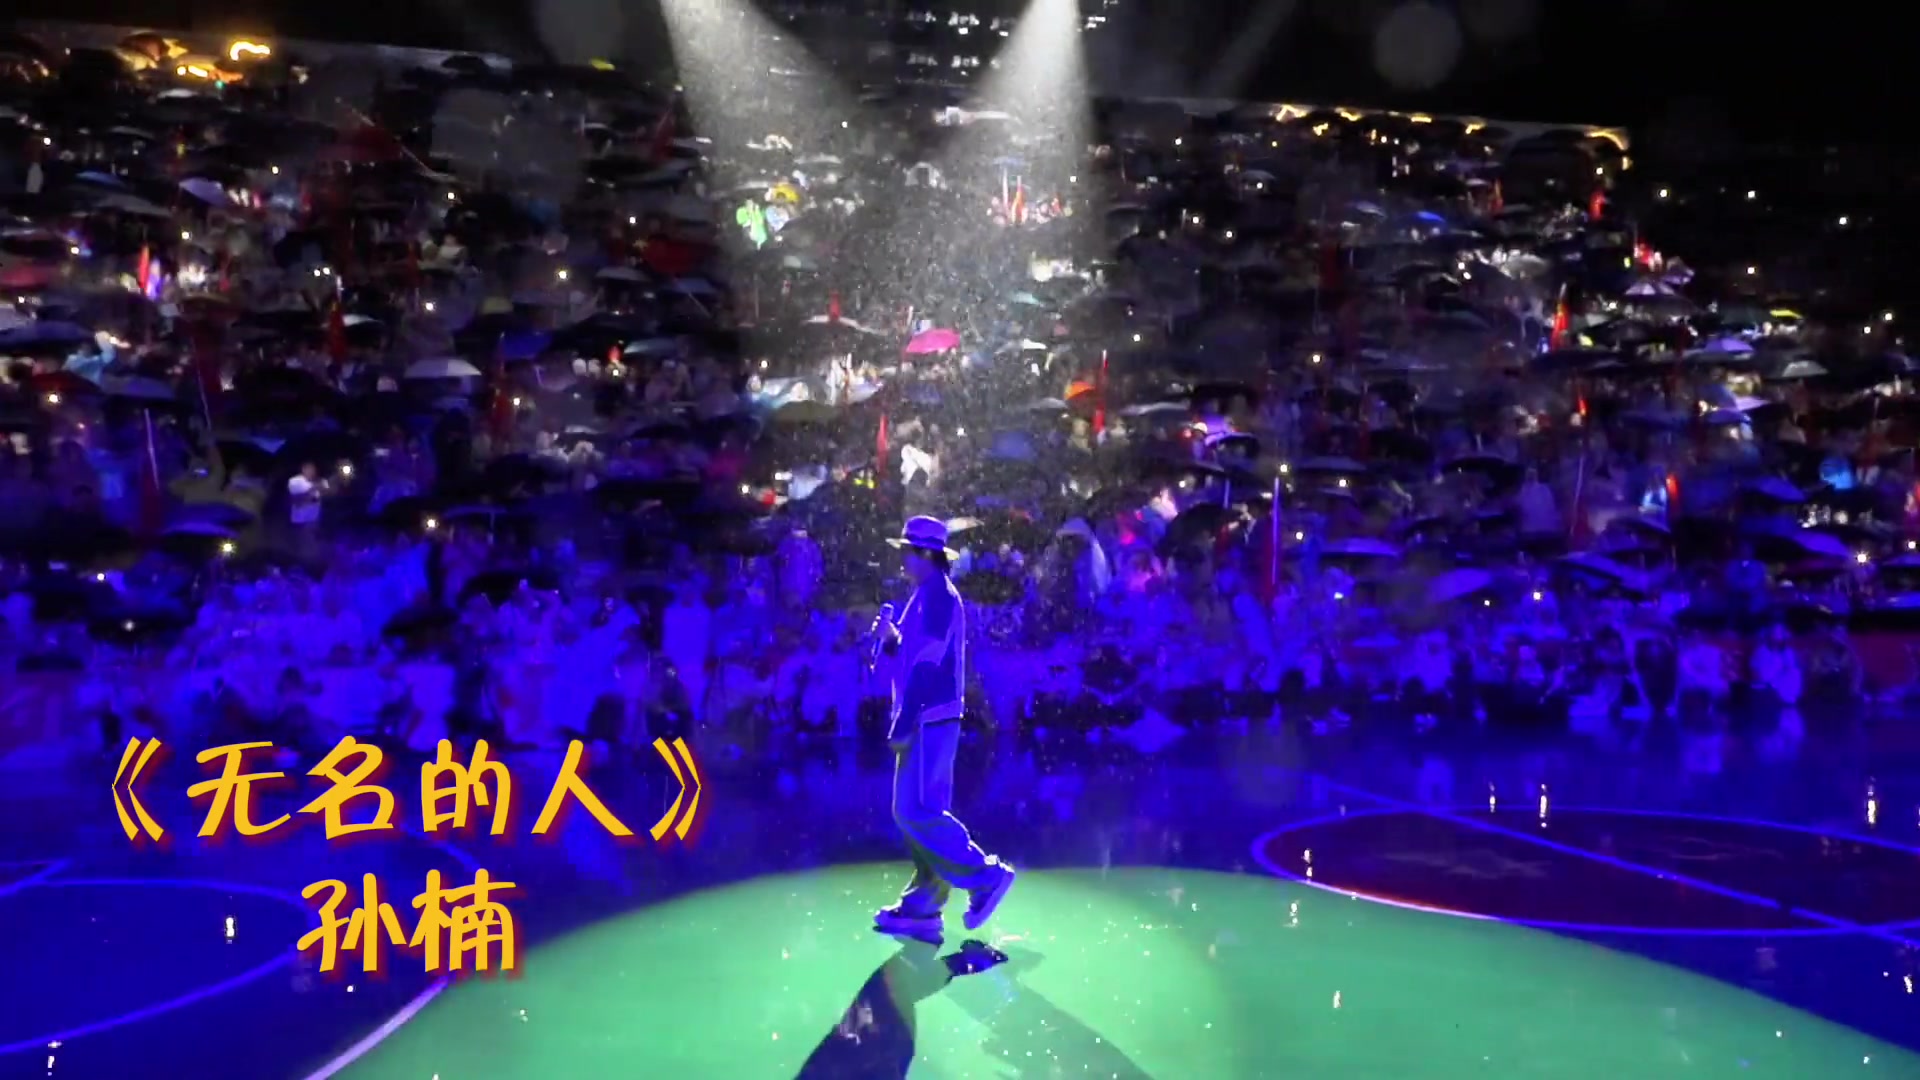  孙楠在村BA现场演唱《无名的人》，以此歌致敬所有贵州村BA的 幕后人员